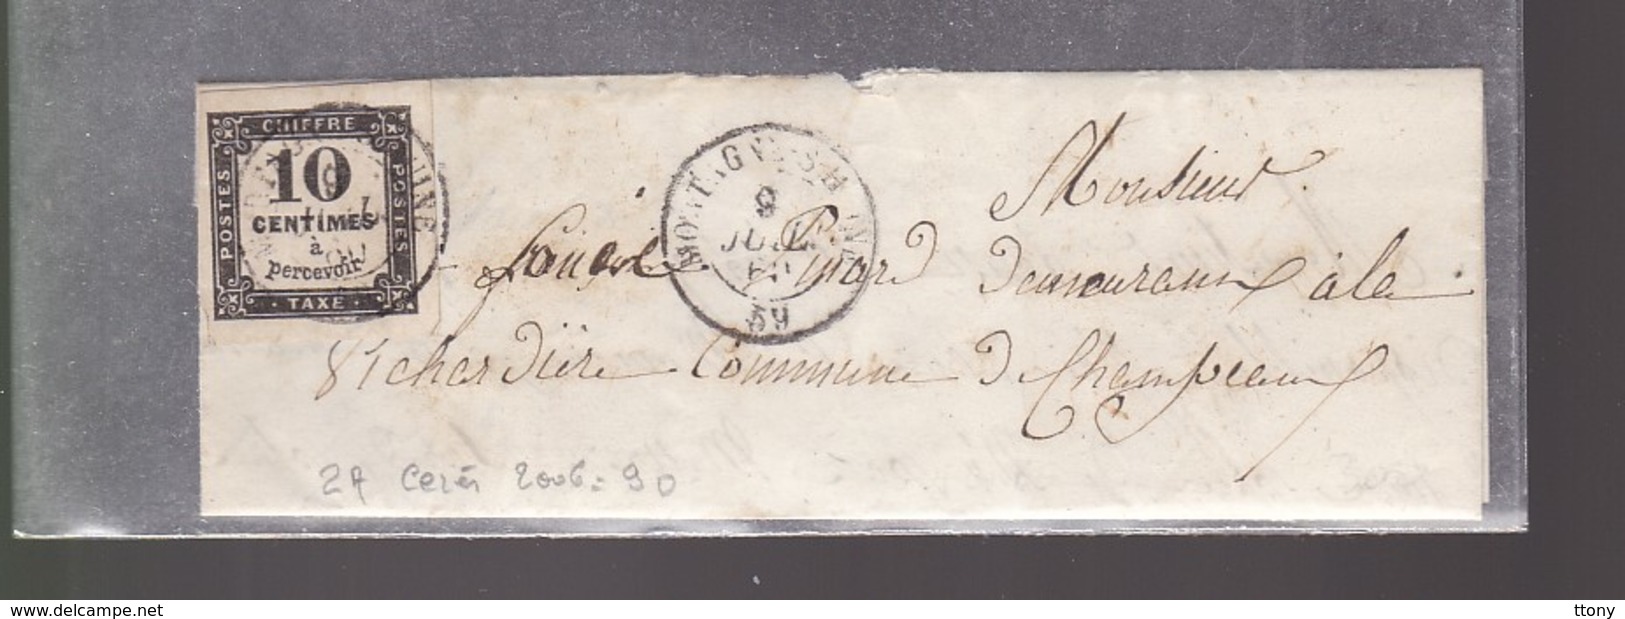 Un Timbre Taxe  10 Centimes à Percevoir      Sur Lettre - 1859-1959 Lettres & Documents